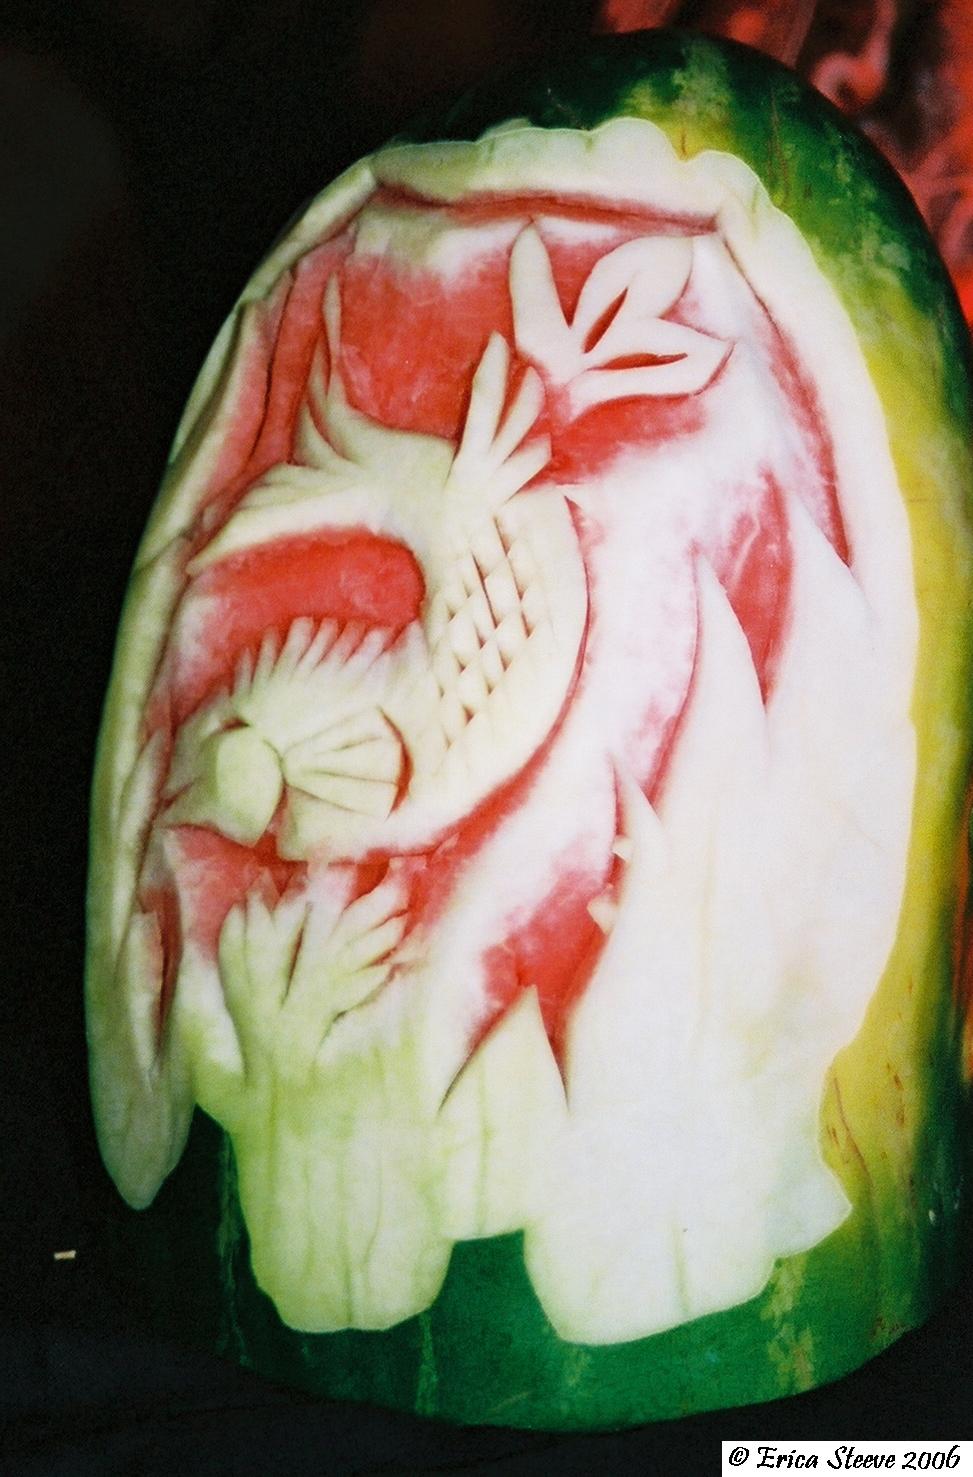 I've heard of pumpken carving, but watermelon!?!